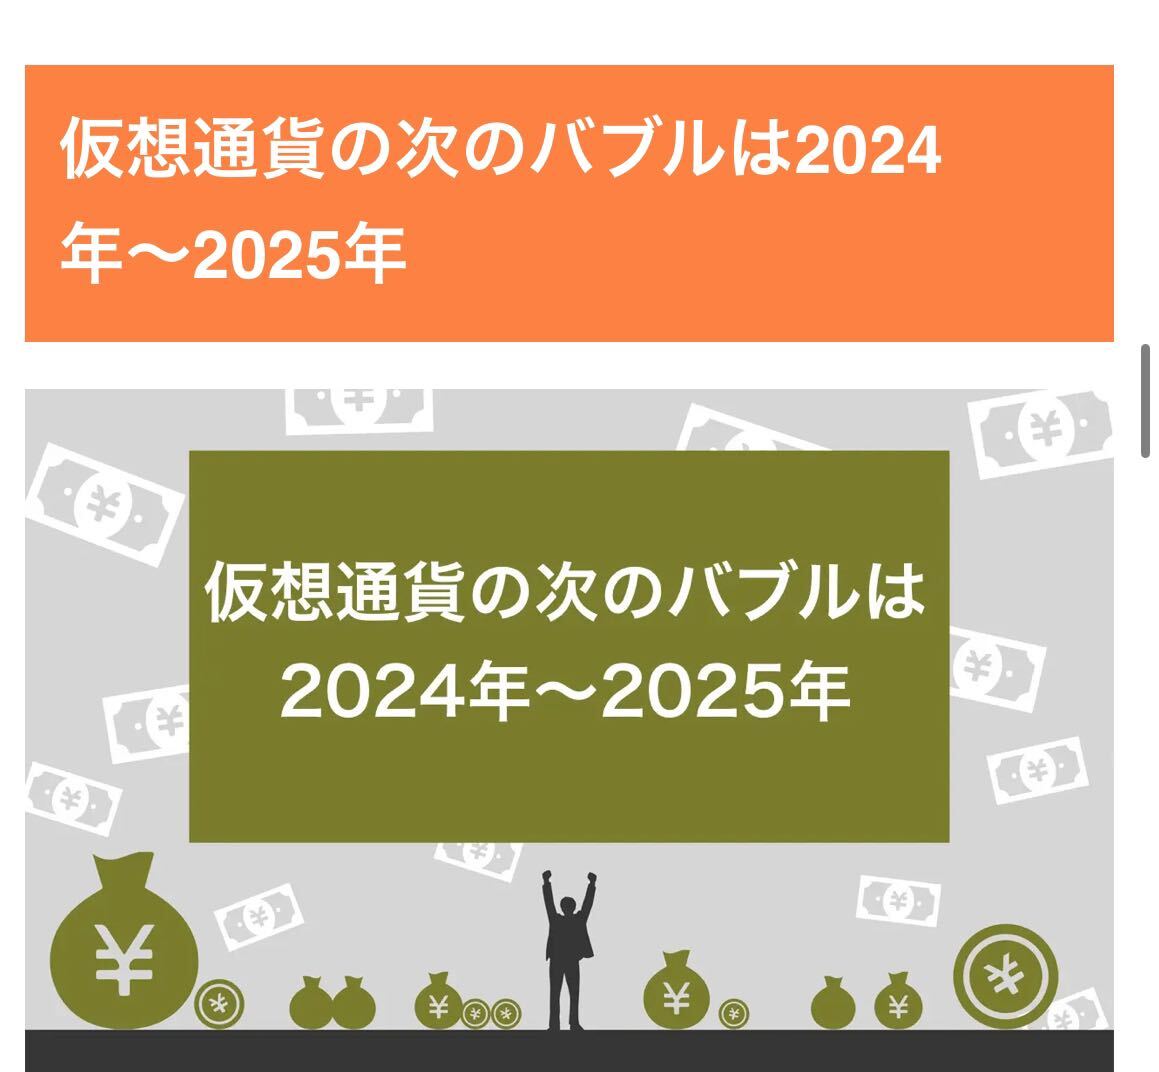 必ず満足出来ると思います^_^返金保証付き13000円「1年以内」ある仮想通貨が貰える情報になります。気になる方はまずは問い合わせくださいの画像9